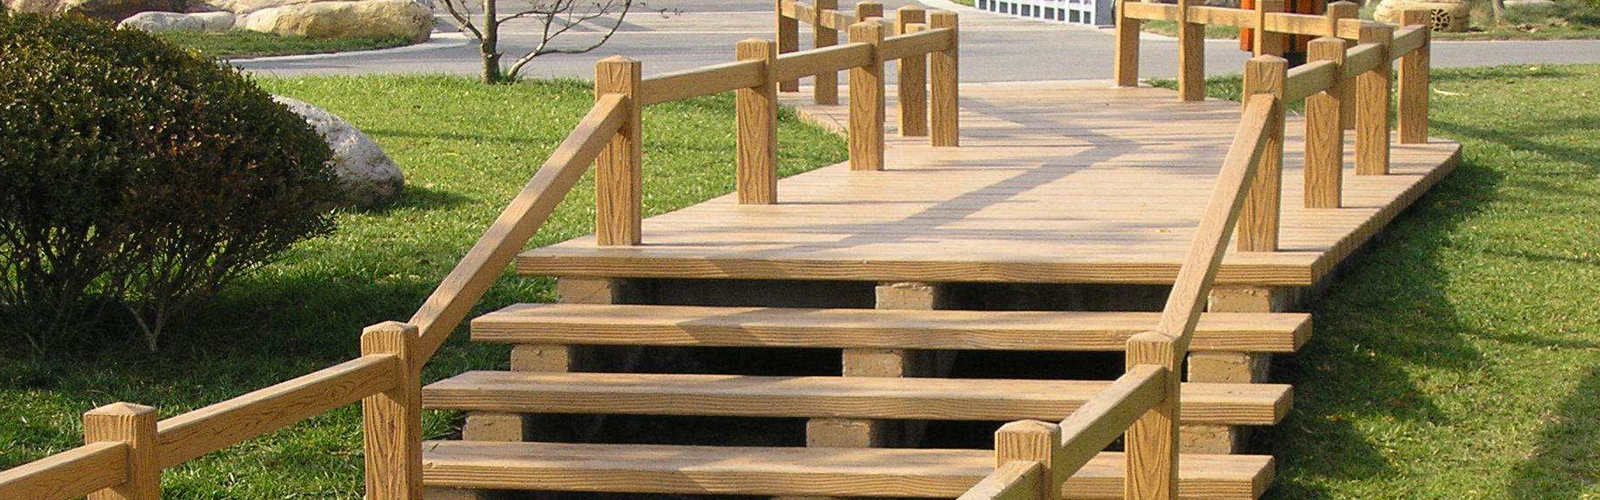 仿木栏杆模具要求施工人员做好防护措施